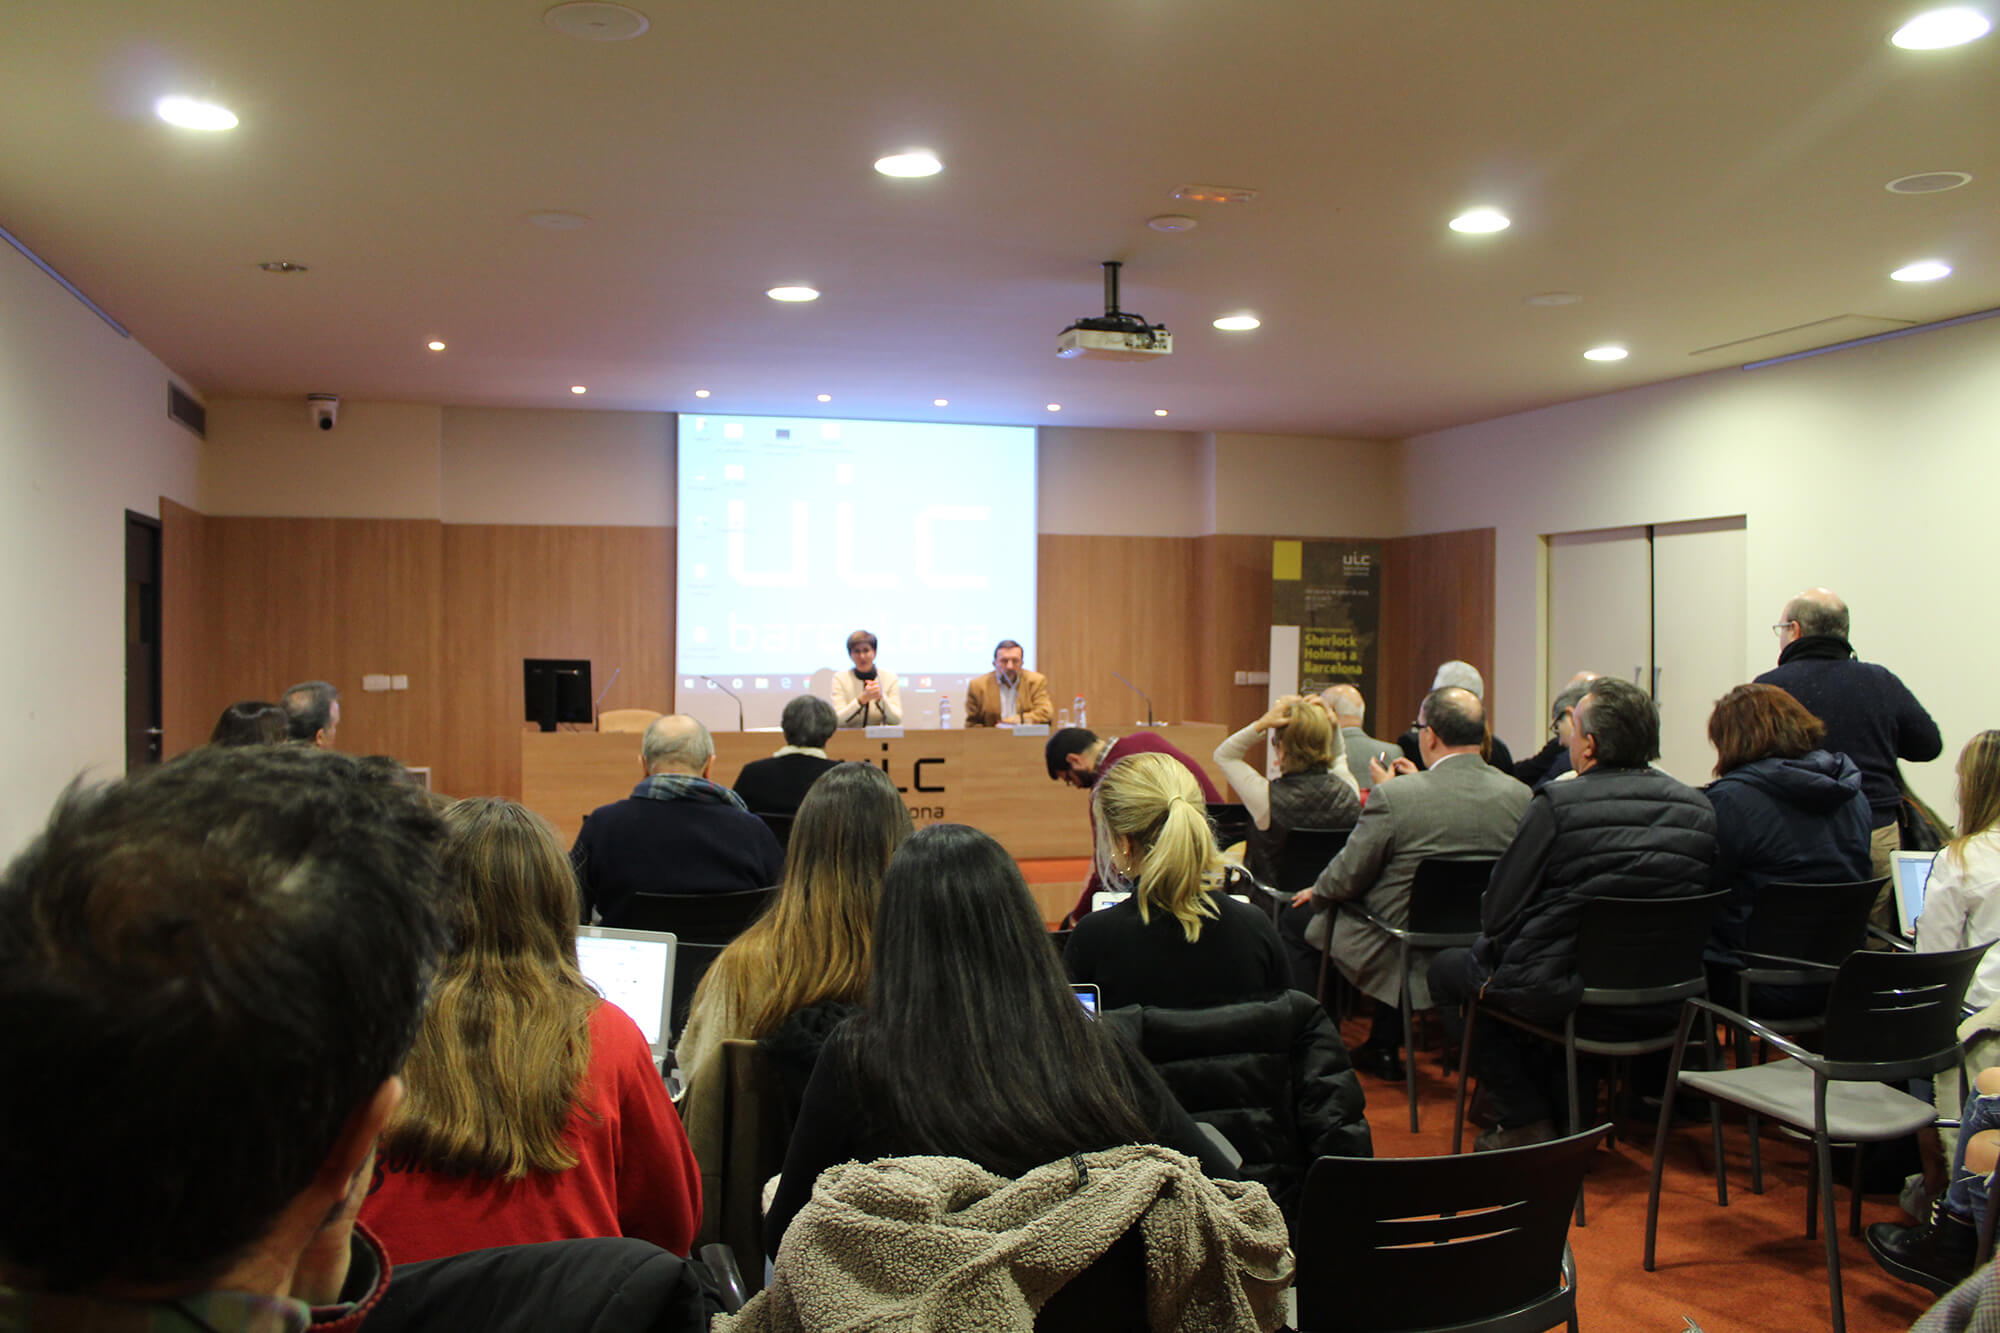 Teresa Vallès, professora de UIC Barcelona. Conferència “Carlos Pujol i la novel·la policíaca: la literatura com a diversió intel·ligent”. UIC Barcelona, 30 de gener de 2019.